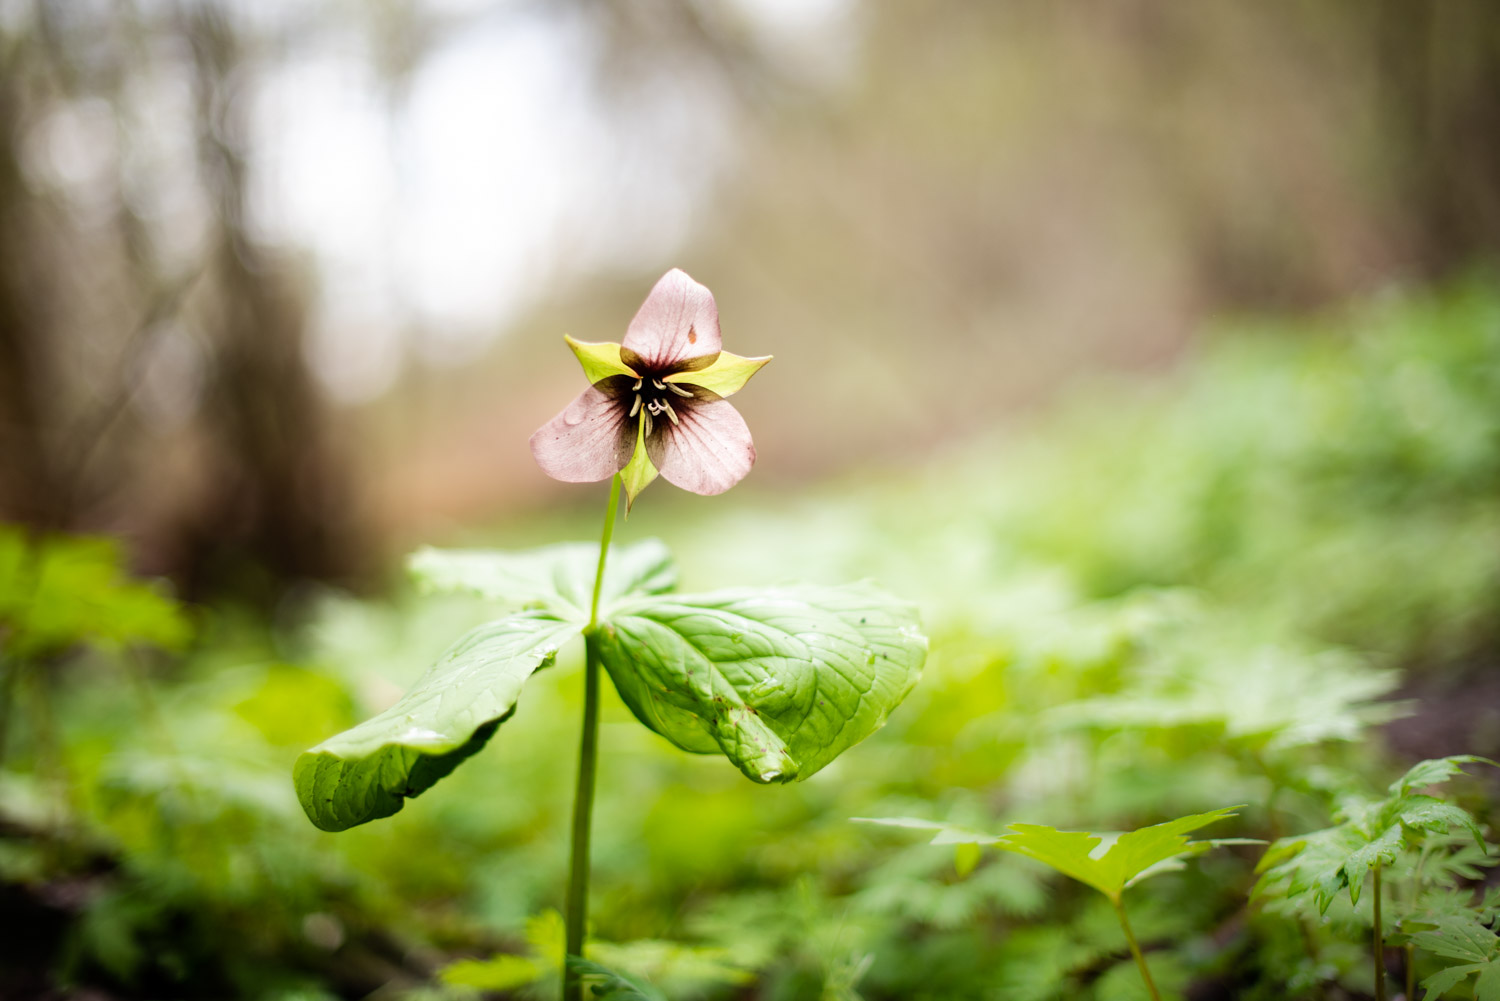 Trillium flower in the woods.